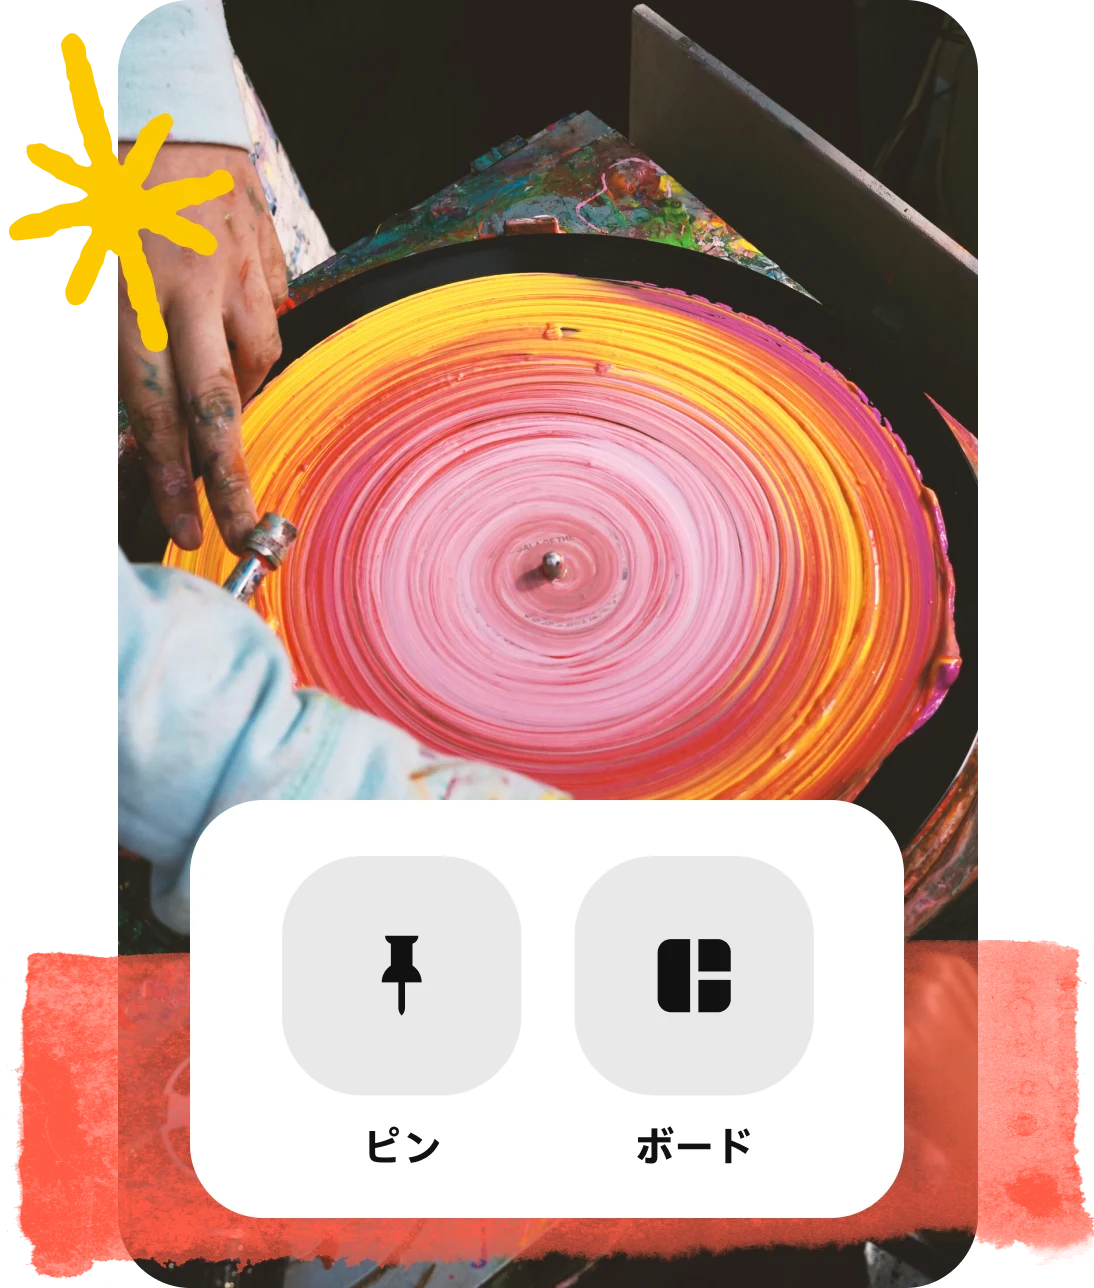 「ピンのフォーマット」ボタンと色が塗られたレコードを廻している手の画像のコラージュ